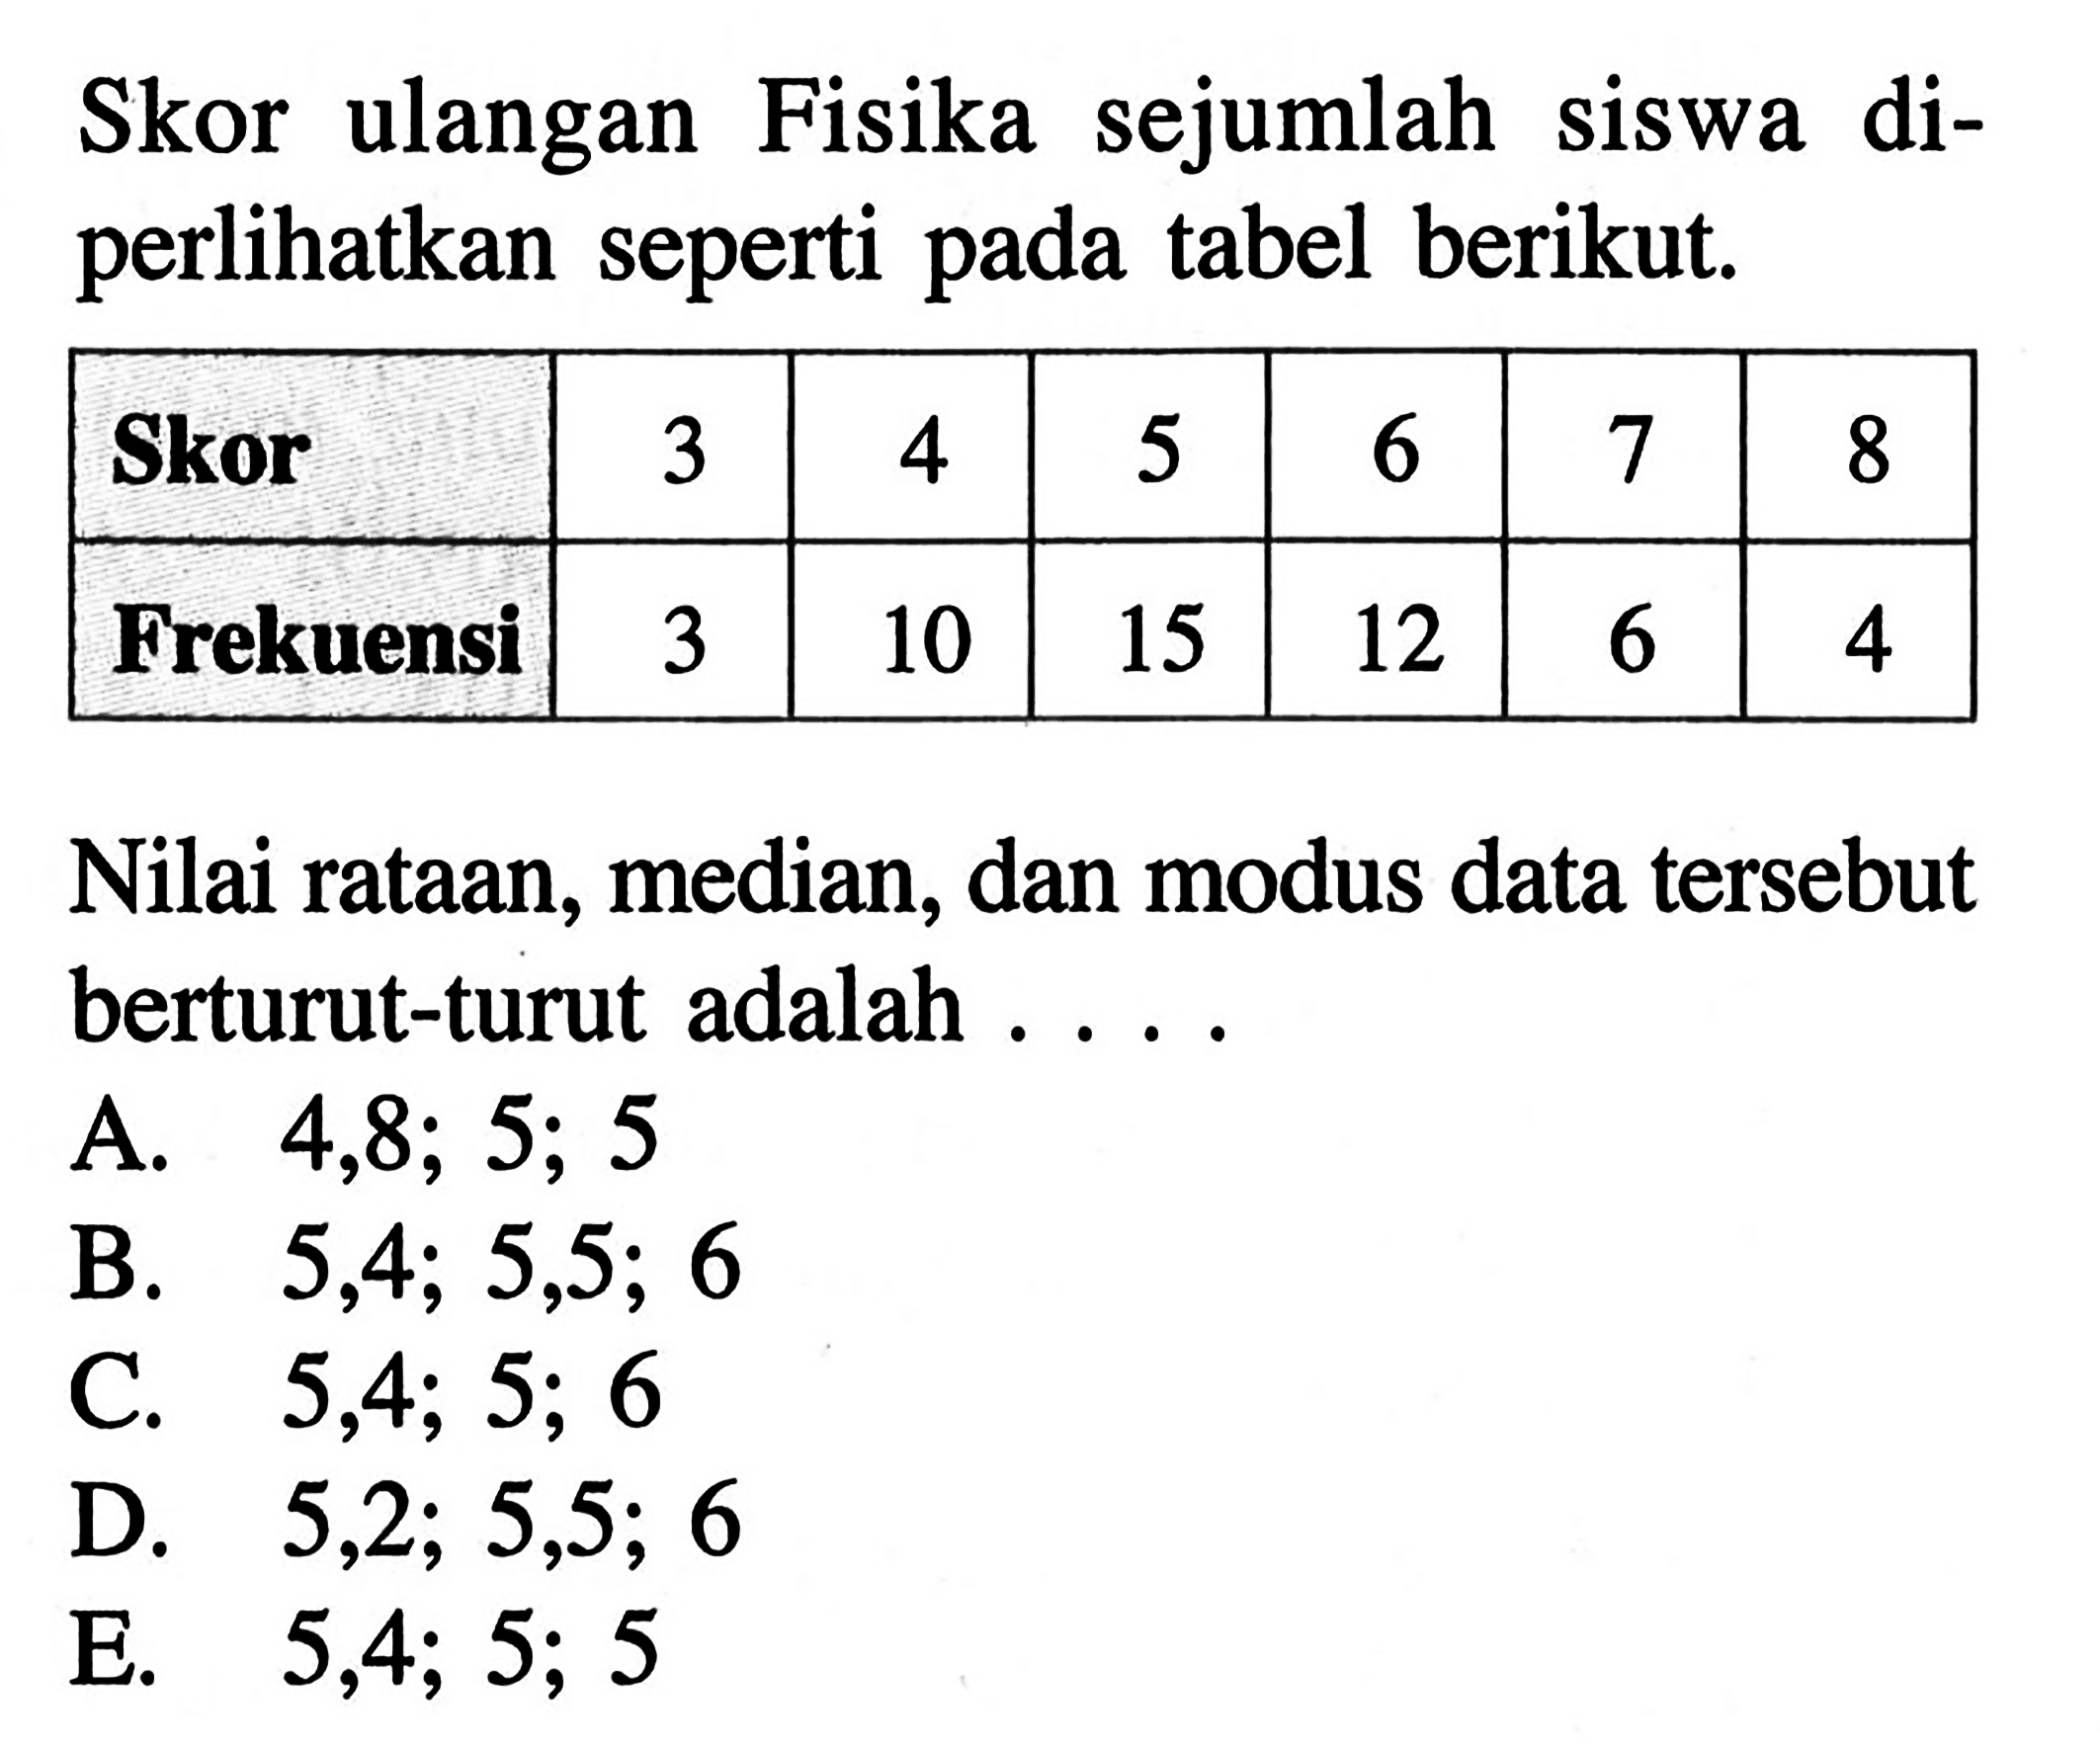 Fisika sejumlah Skor ulangan Siswa di- perlihatkan seperti pada tabel berikut. Skor 3 4 5 6 7 8 Frekuensi 3 10 15 12 6 4 Nilai rataan, median, dan modus data tersebut berturut-turut adalah . . . .